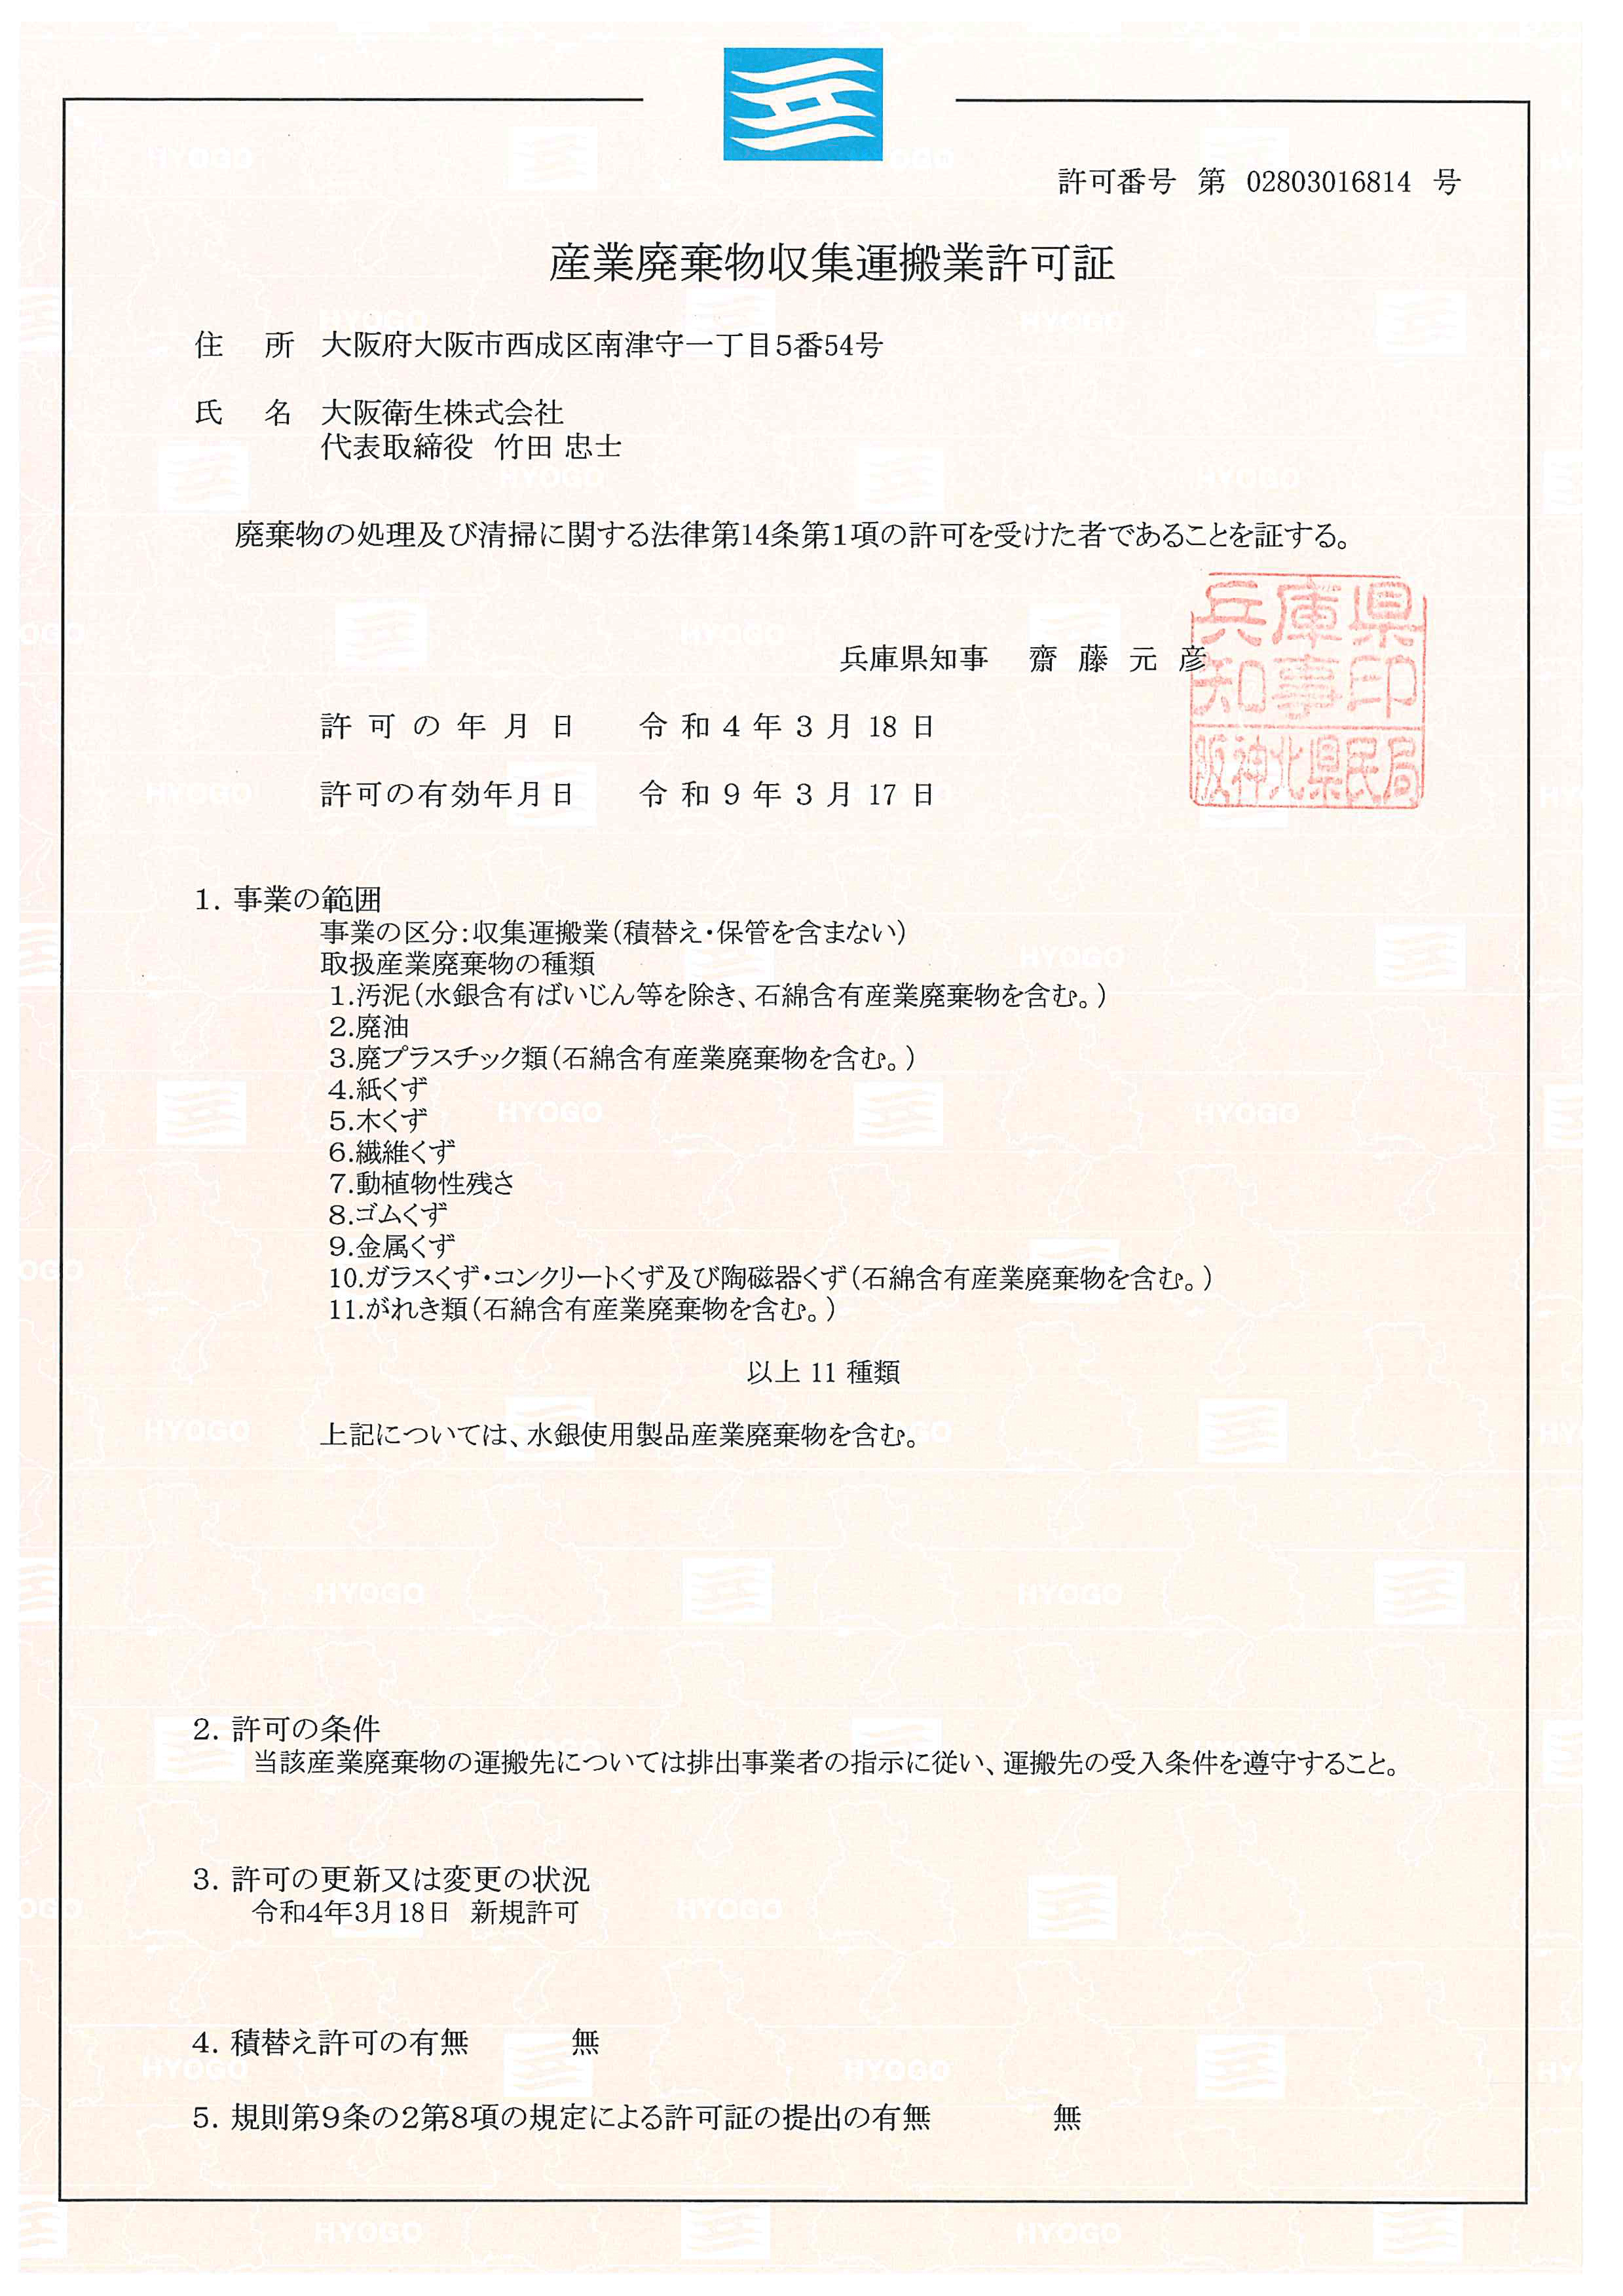 兵庫県産業廃棄物収集運搬業許可証（第02803016814号）